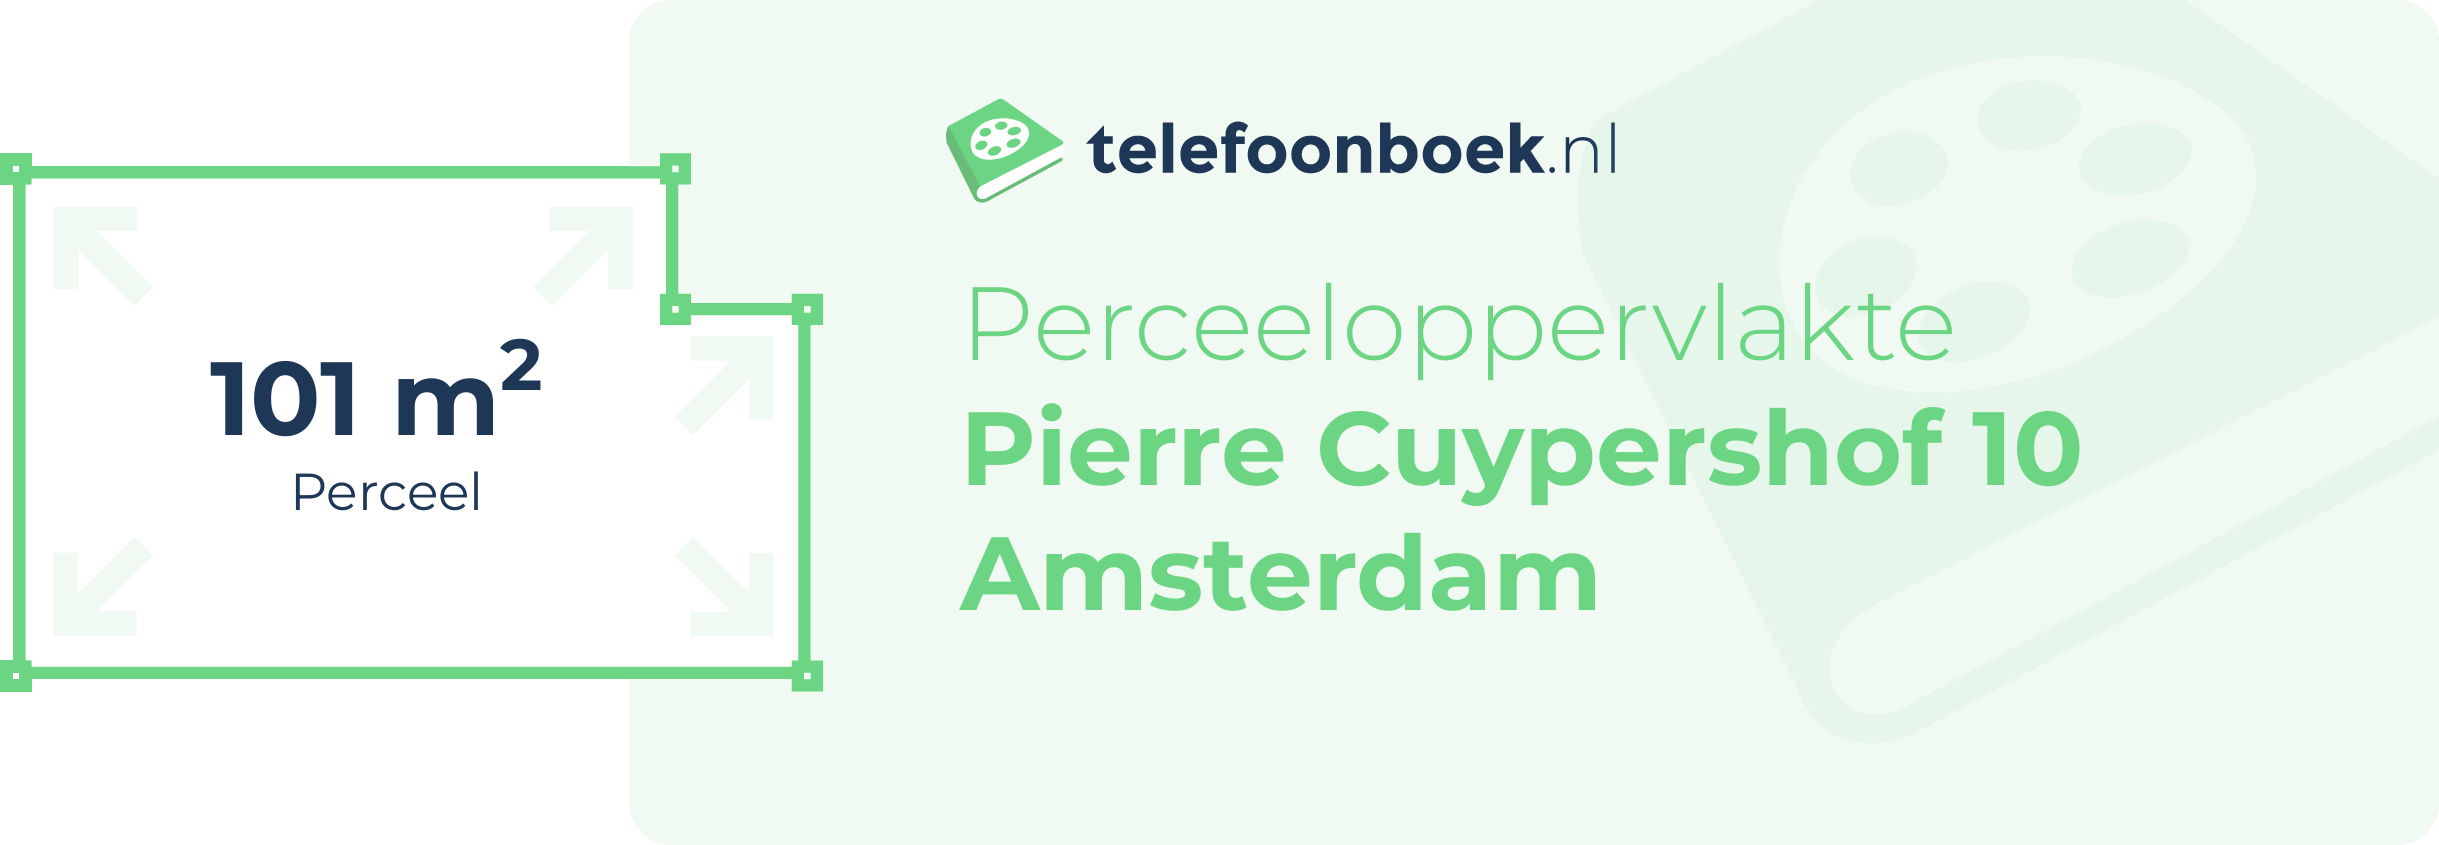 Perceeloppervlakte Pierre Cuypershof 10 Amsterdam